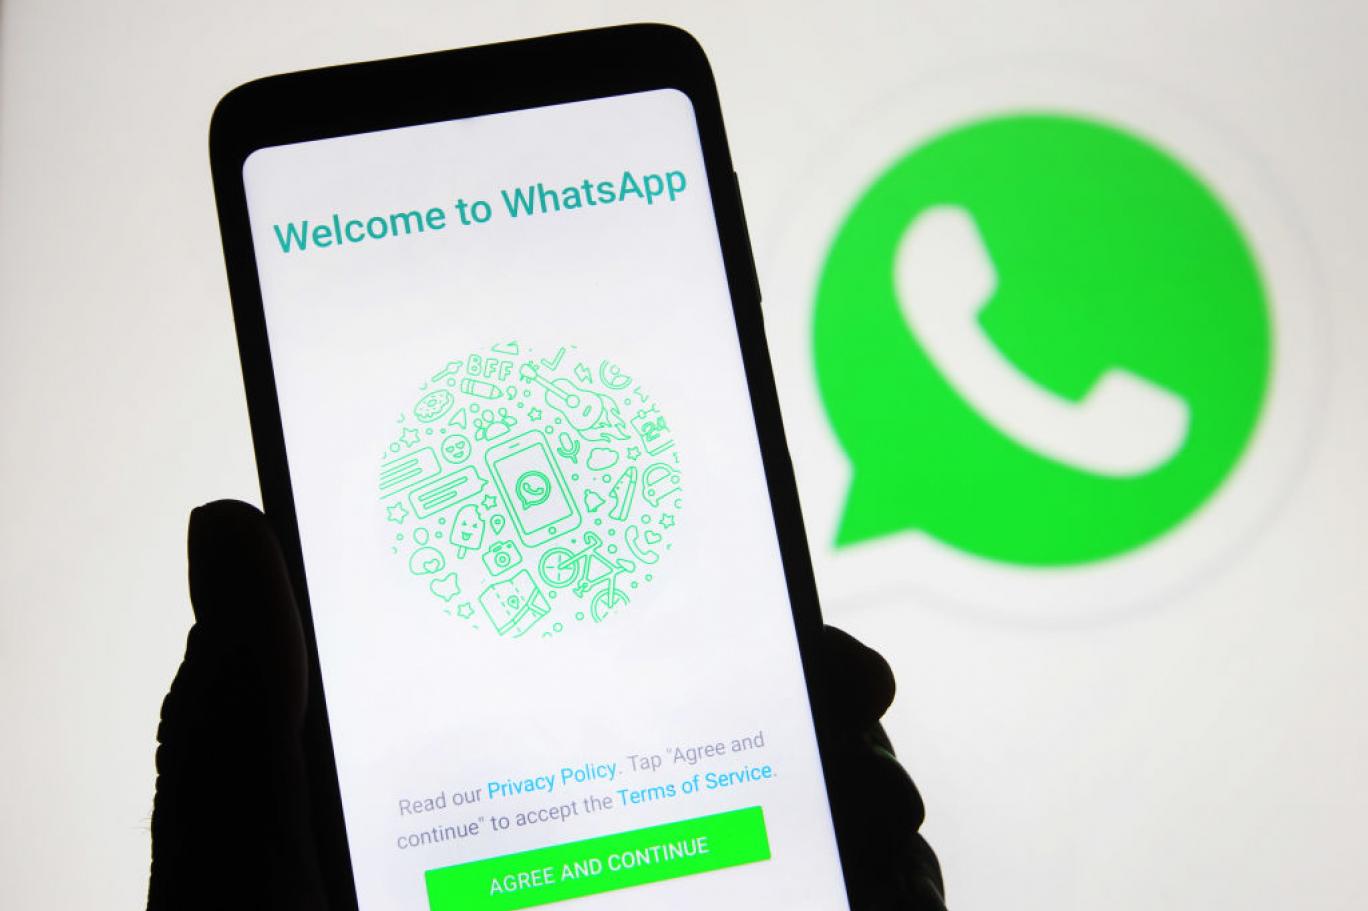 واتساب WhatsApp حذف أكثر من 8 مليون حساب لانتهاك قواعد الرسائل في التطبيق